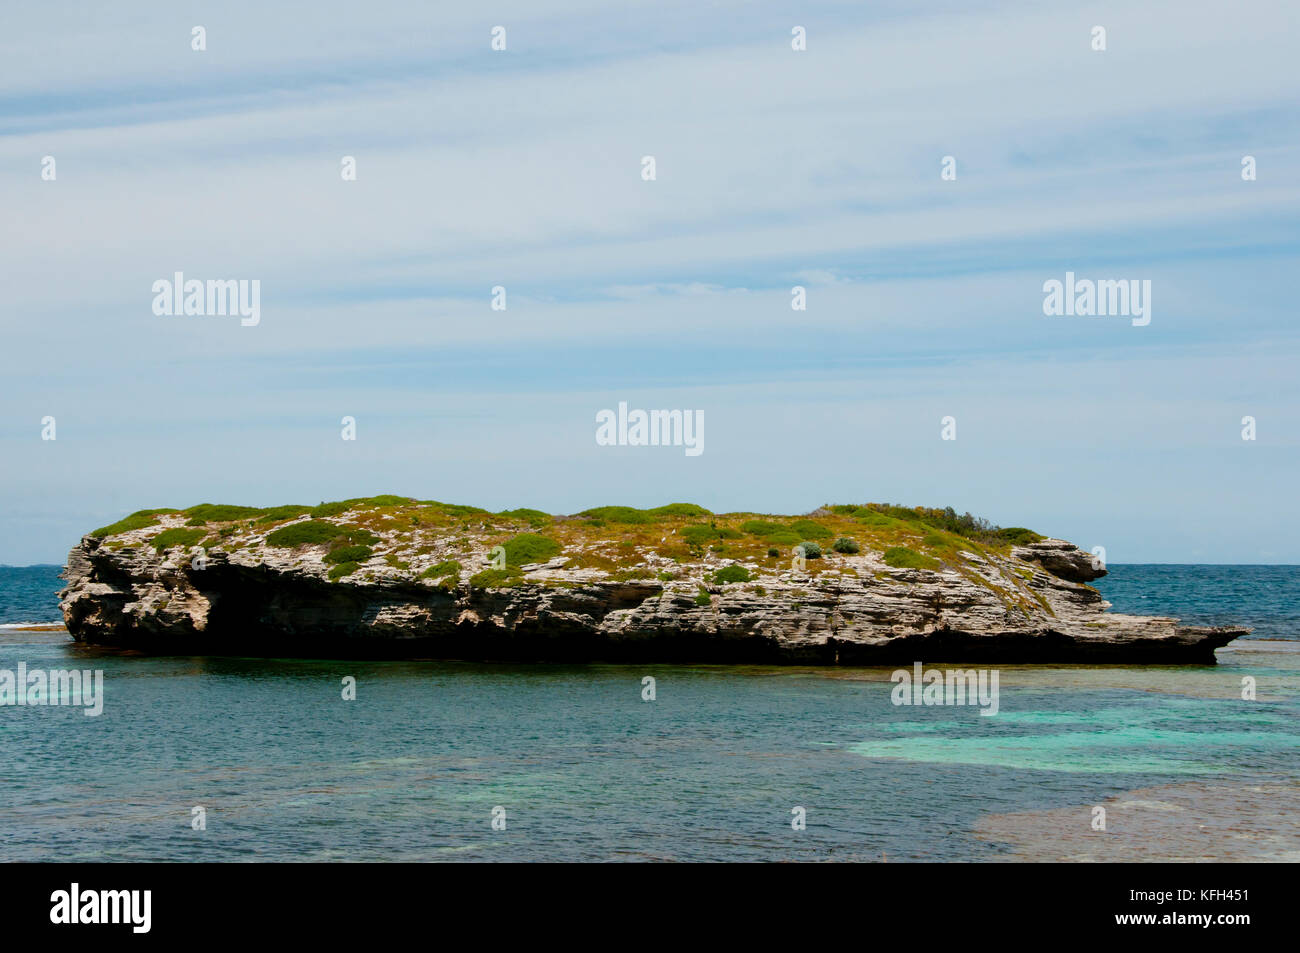 L'île verte - Rottnest Island - Australie Banque D'Images